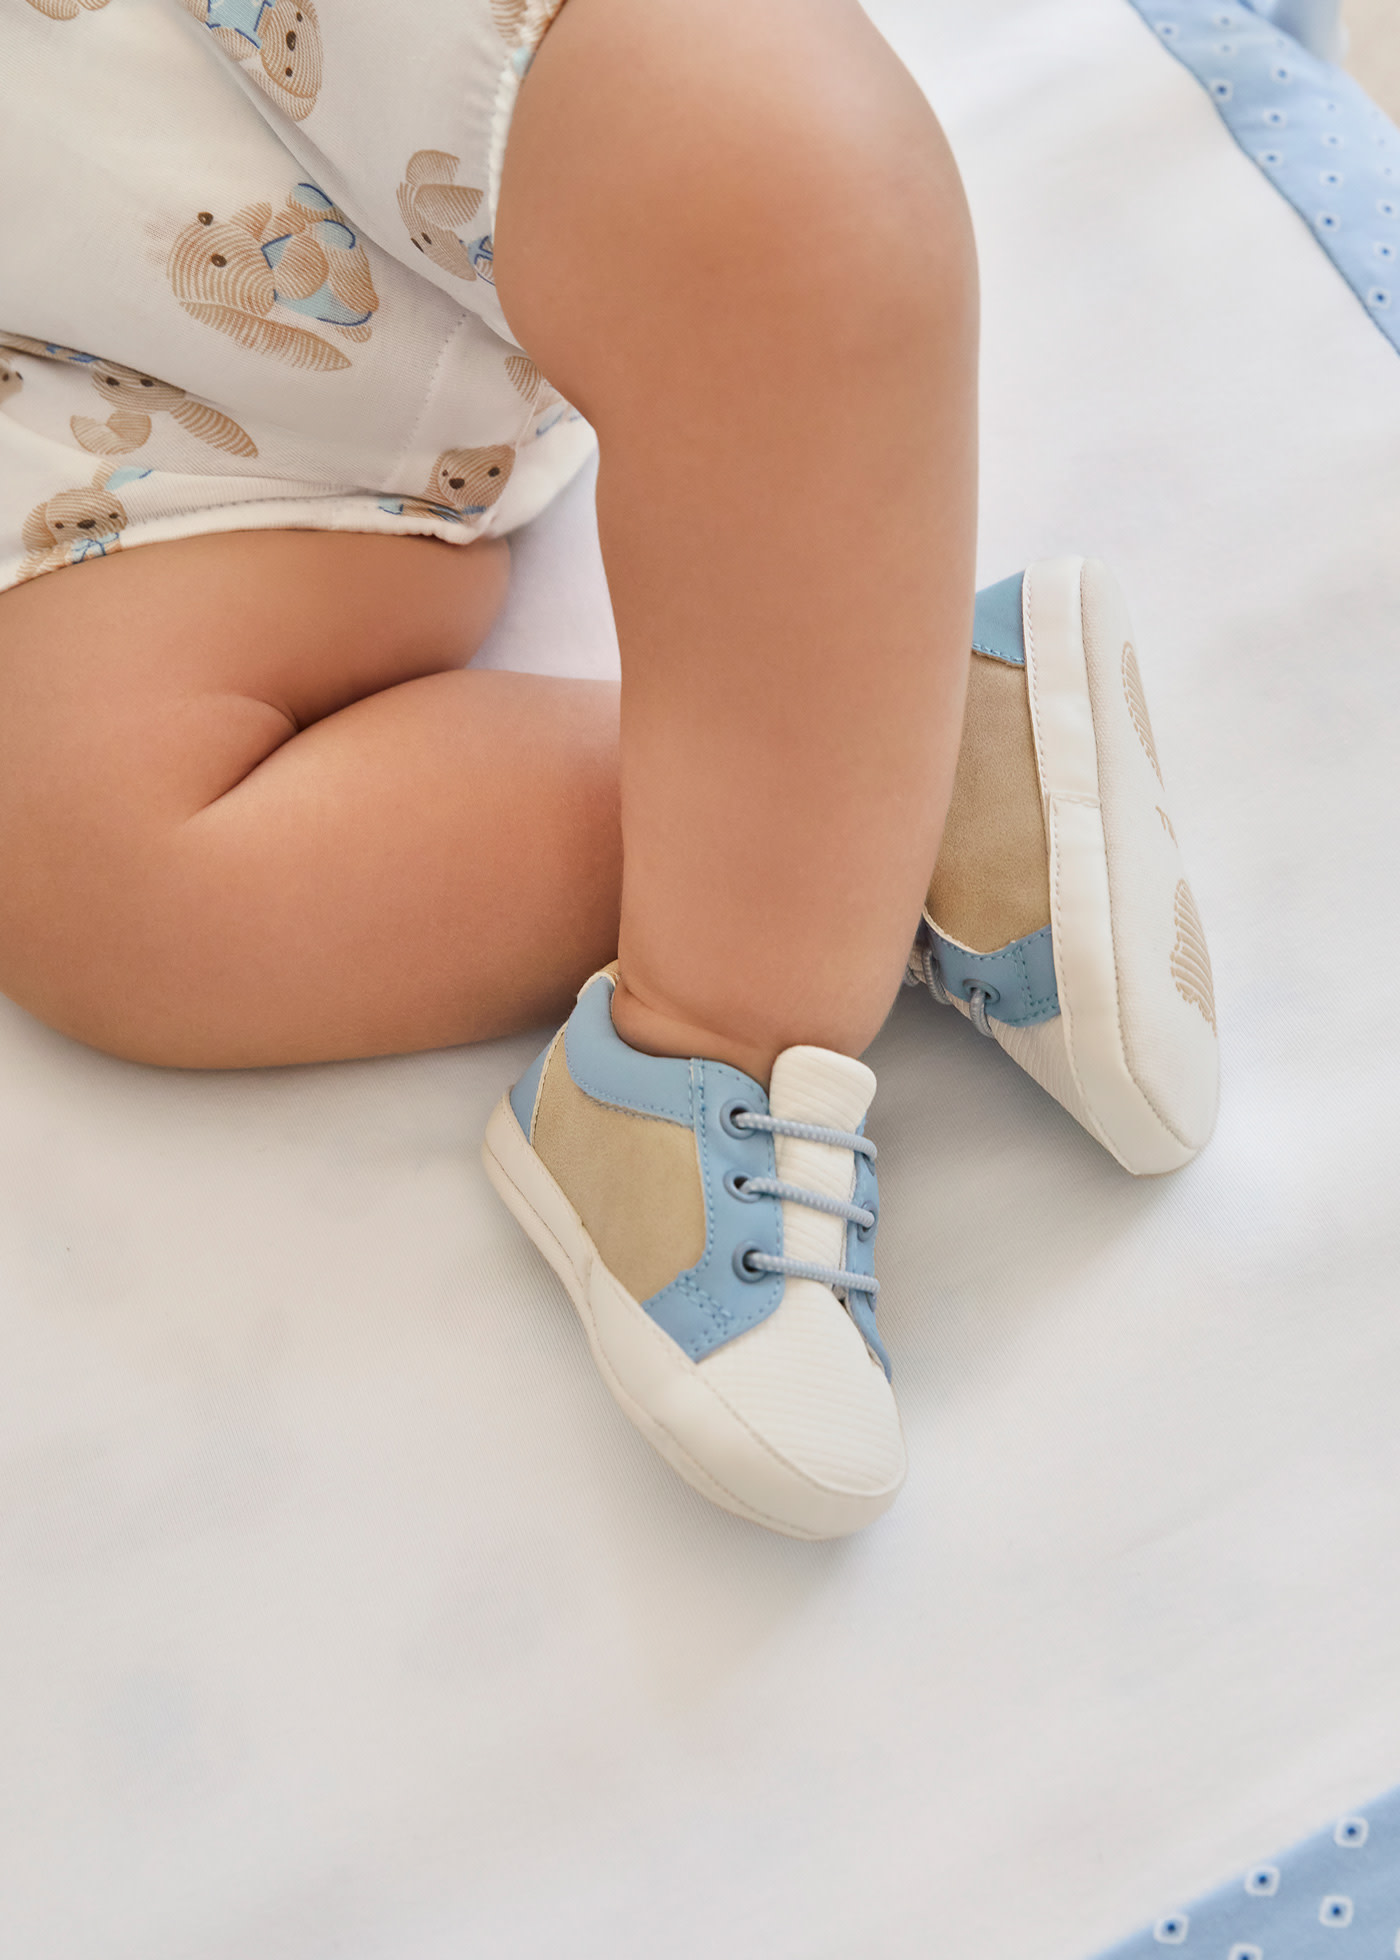 Παπούτσια σπορ νεογέννητο